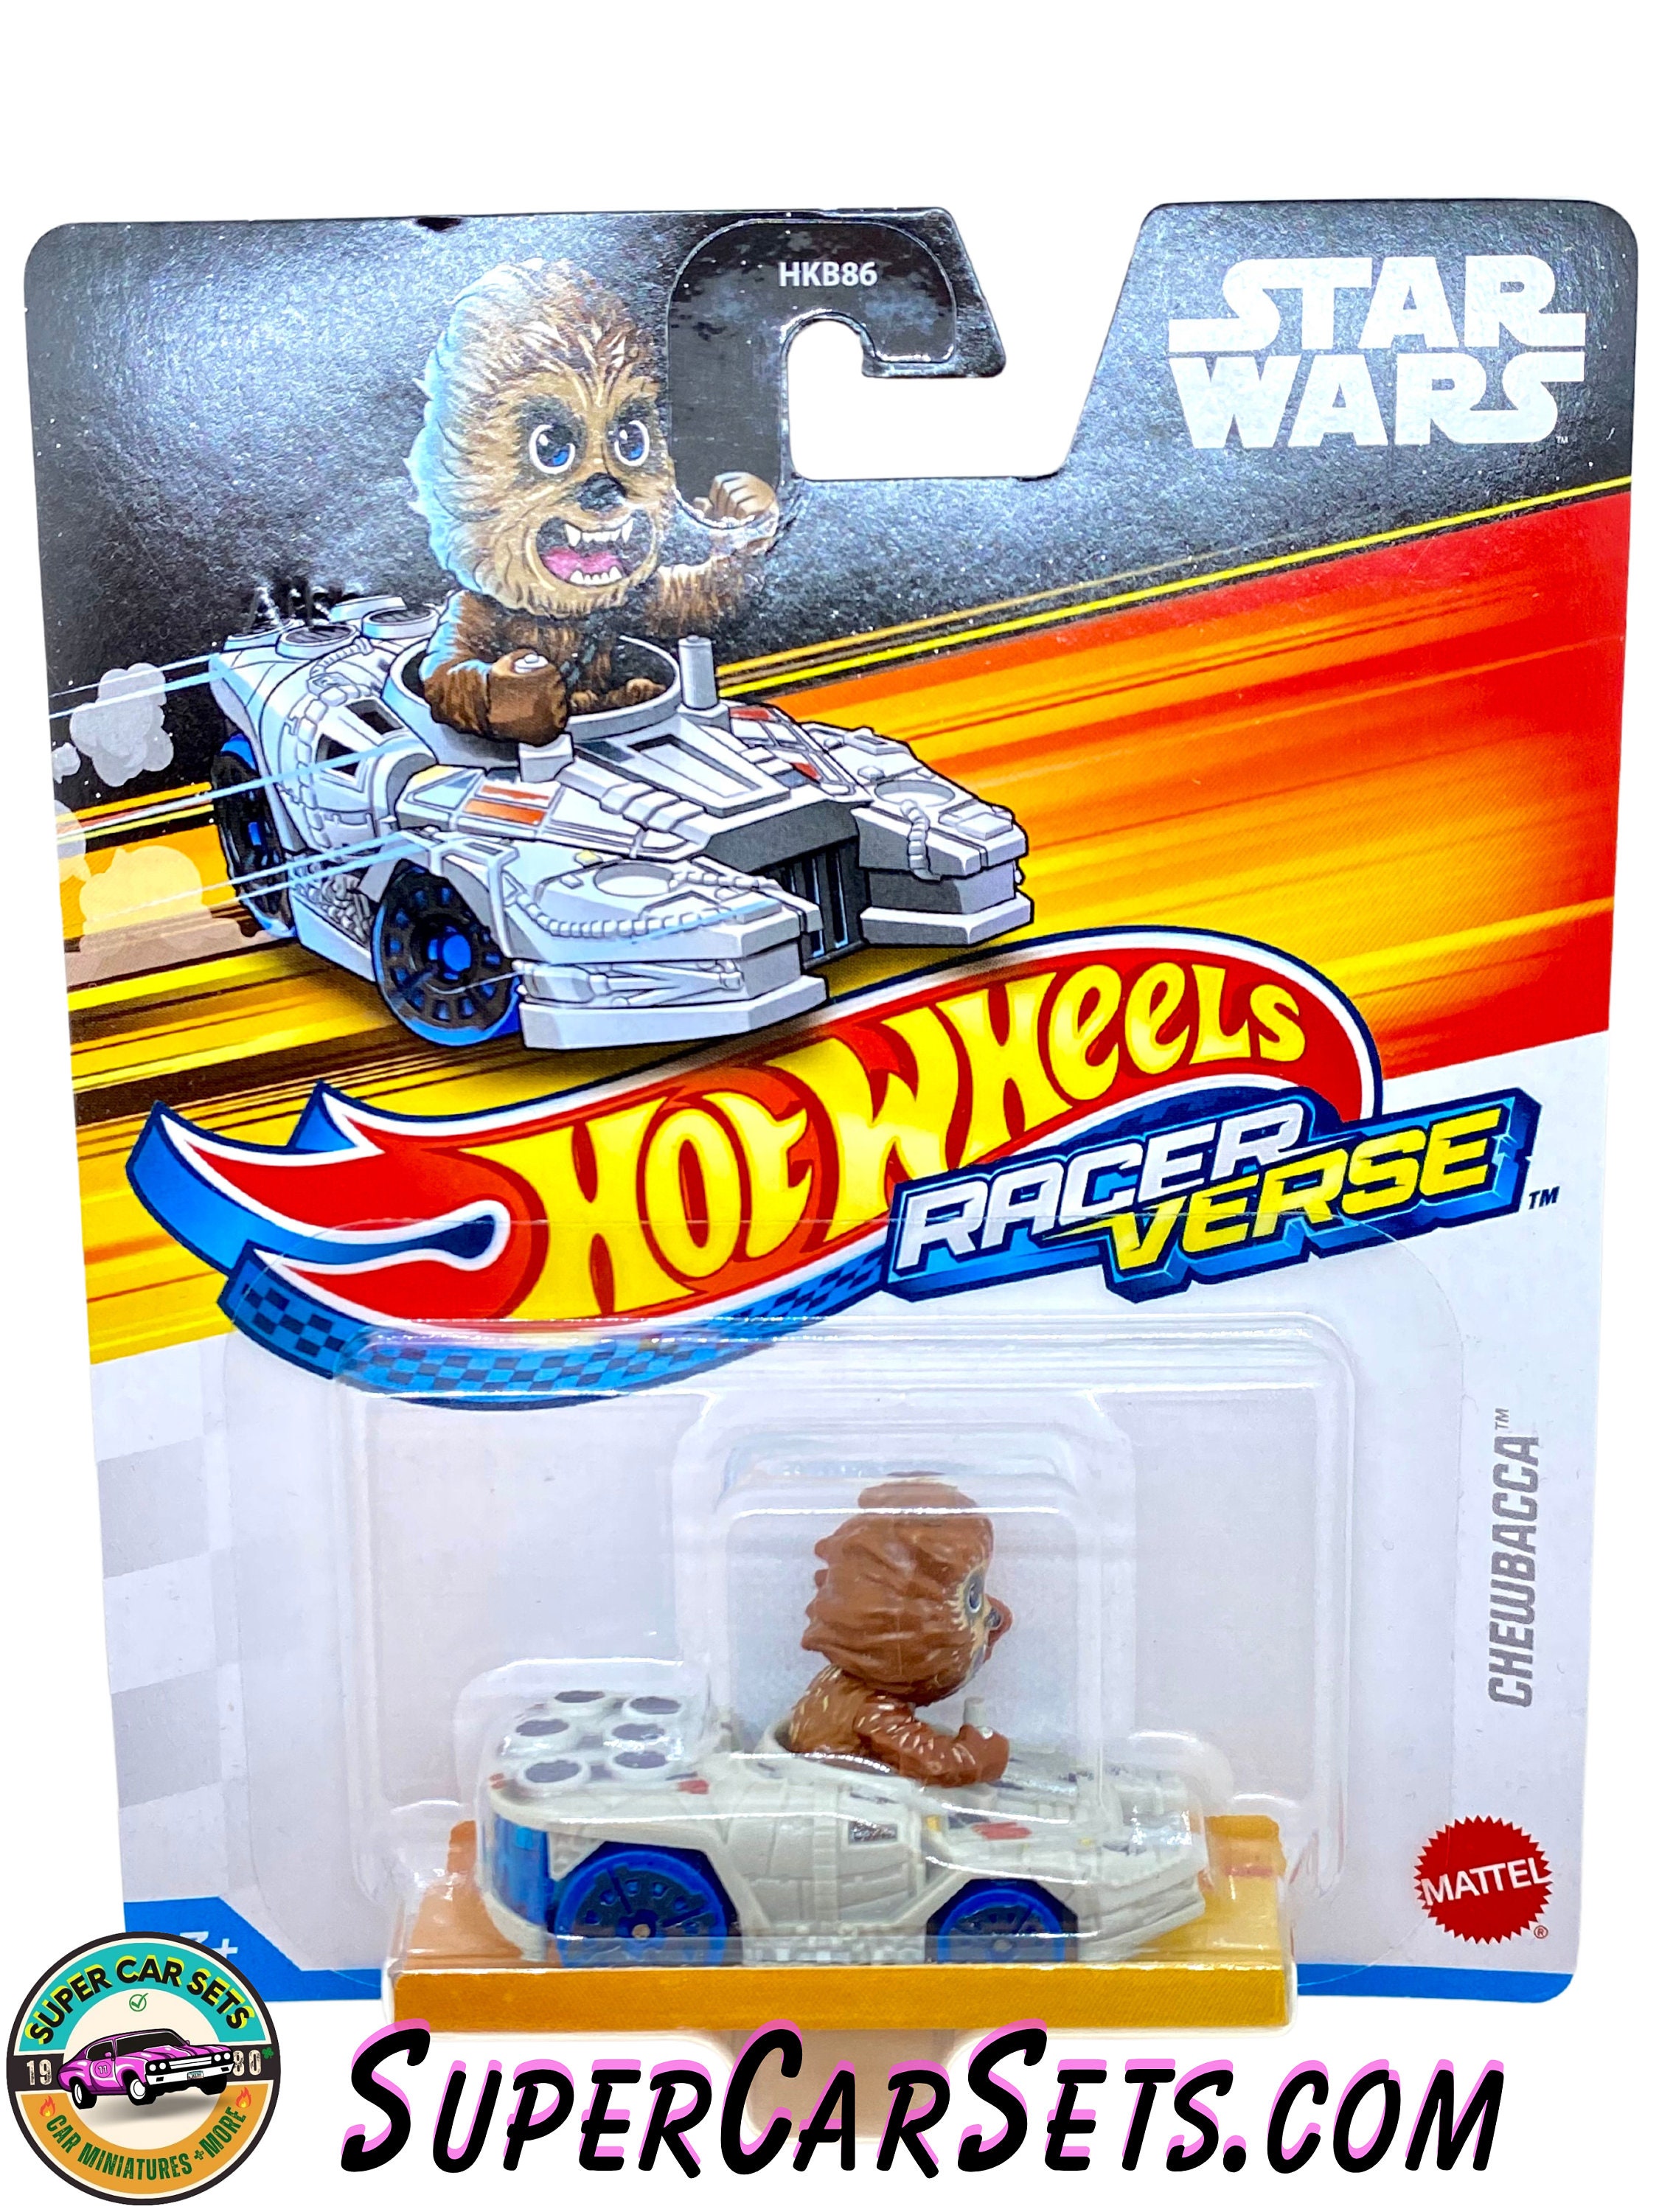 Mattel Hot Wheels Racer Verse Stitch Voiture Miniature Toys pour